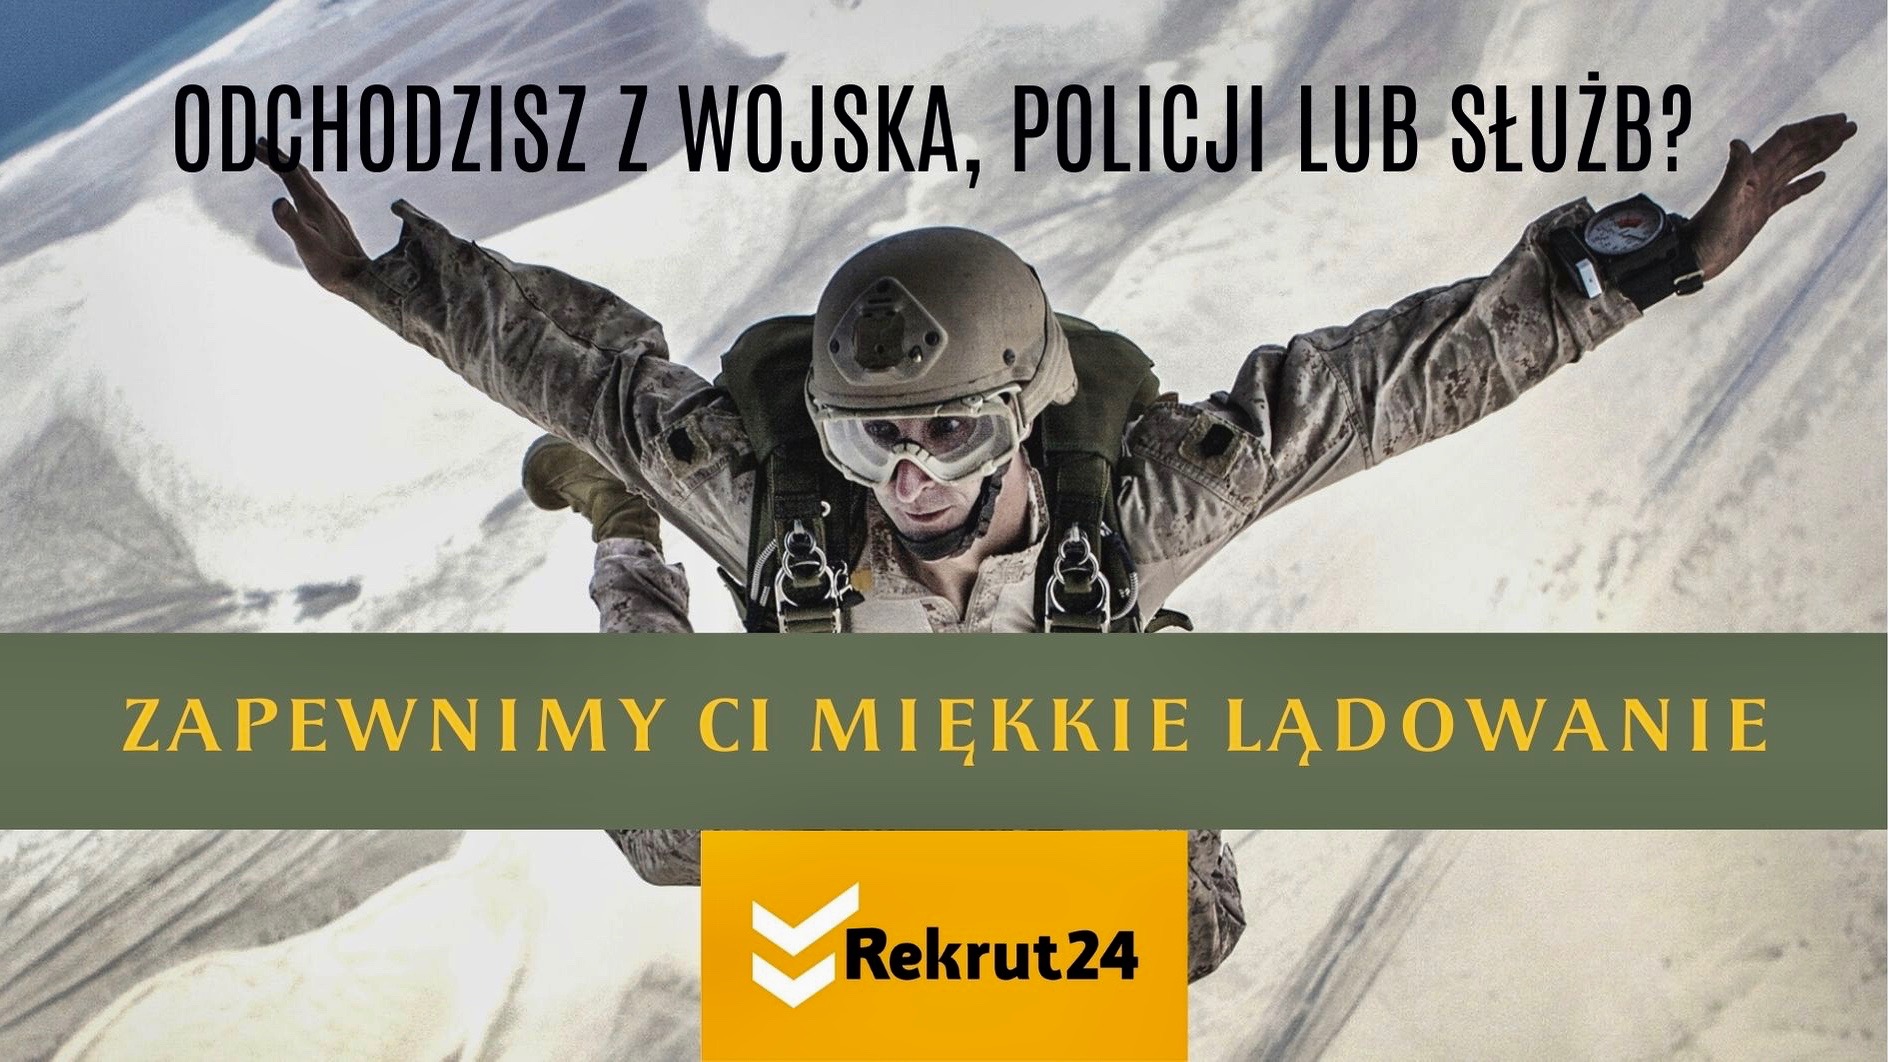 Reklama
Link: www.rekrut24.pl